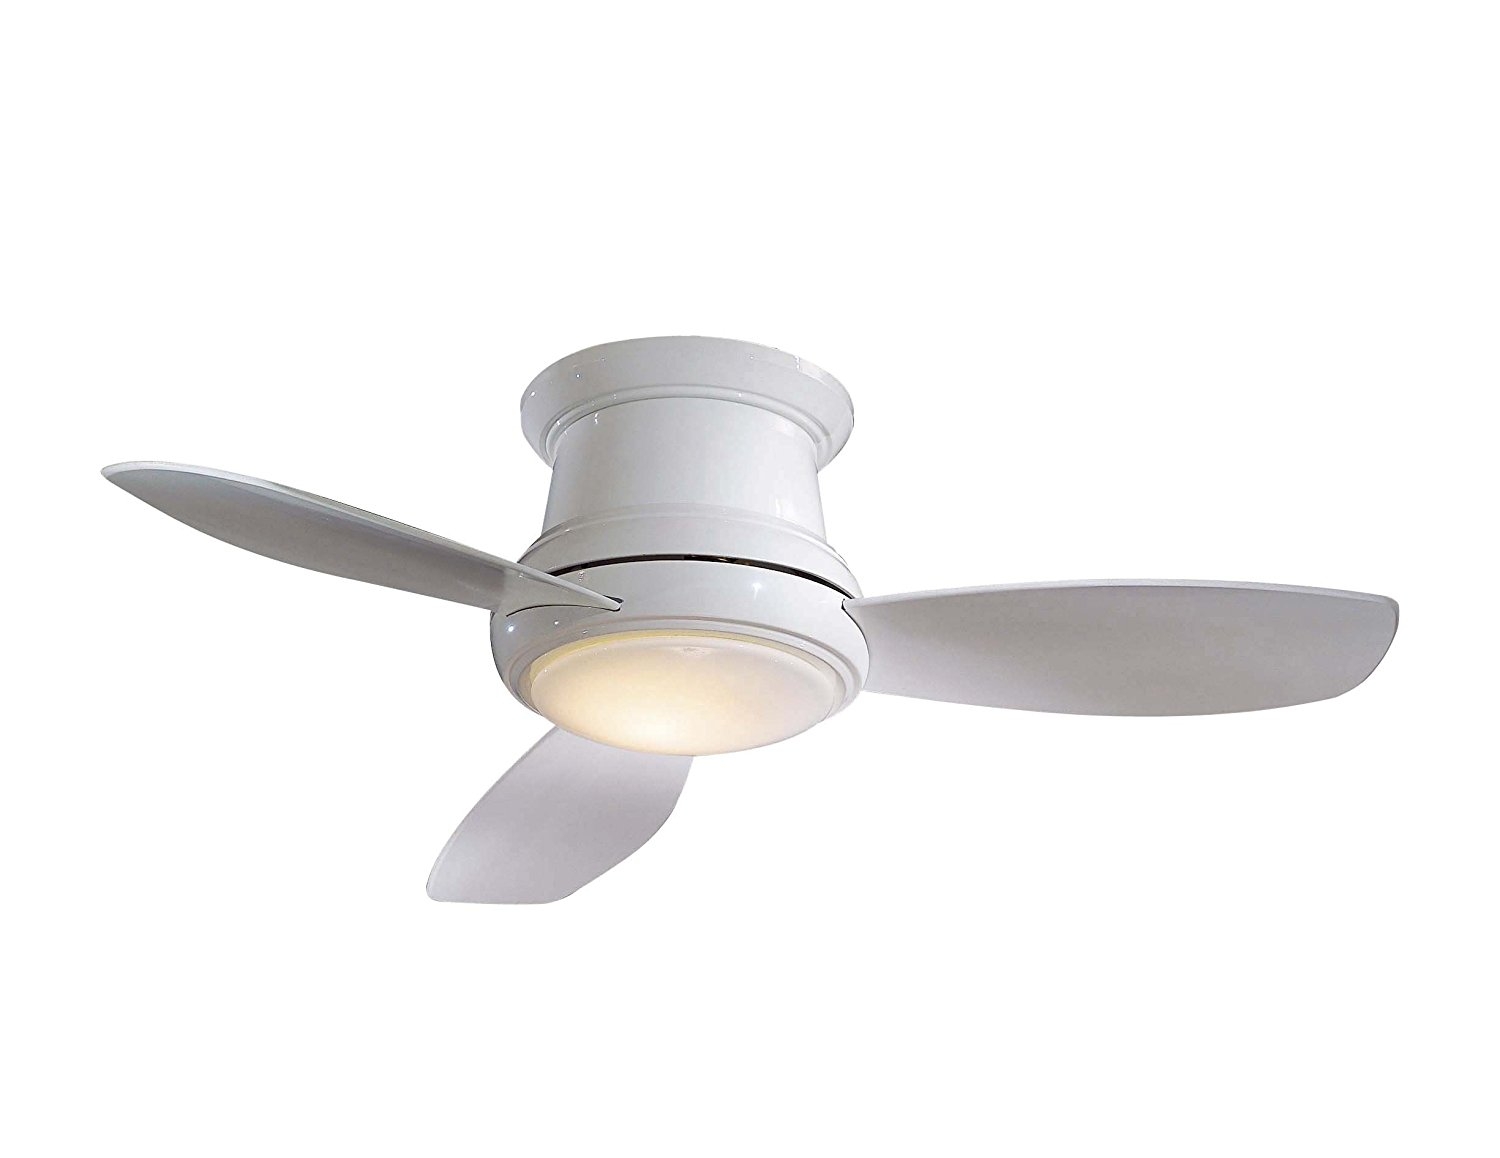 Mini Ceiling Fan With Light1500 X 1158